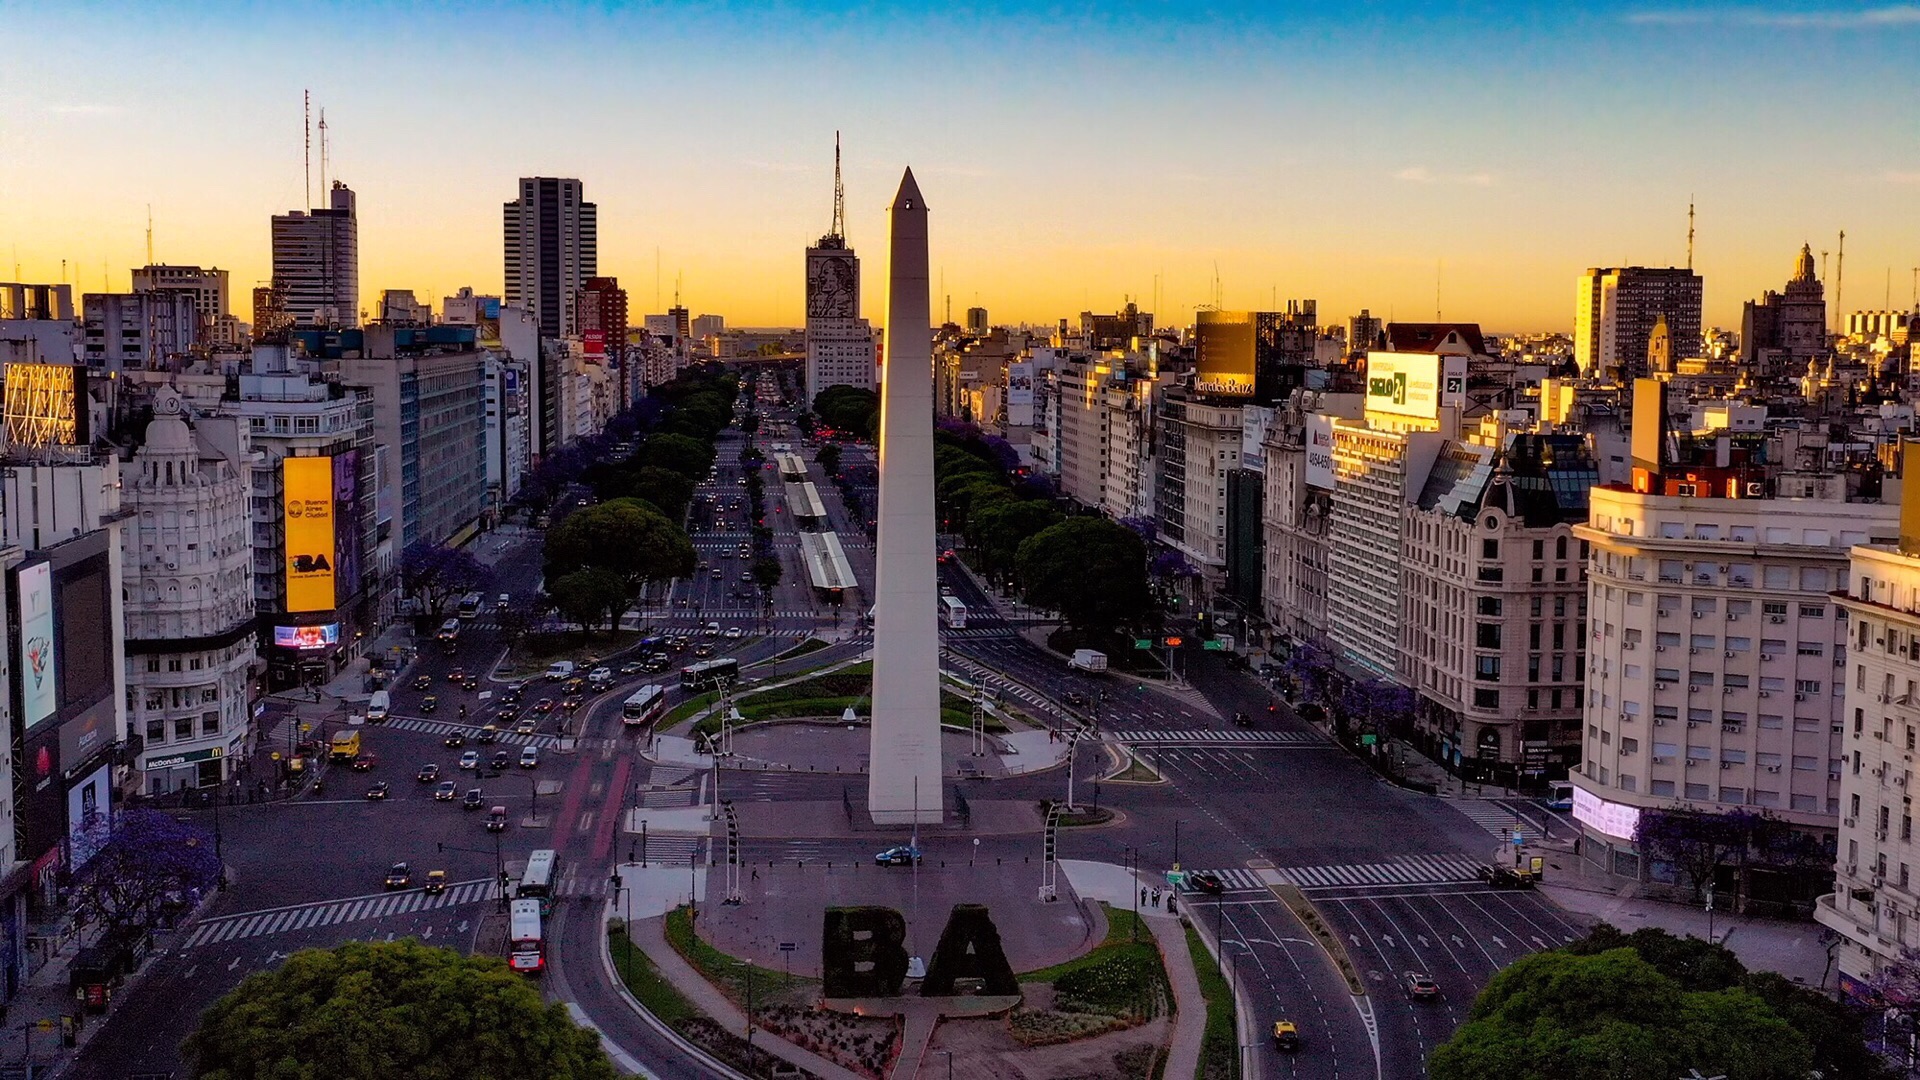 7月9日大道,Argentina,Buenos Aires,五月廣場,布宜諾斯艾利斯,布宜諾斯艾利斯主教座堂,方尖碑,阿根廷